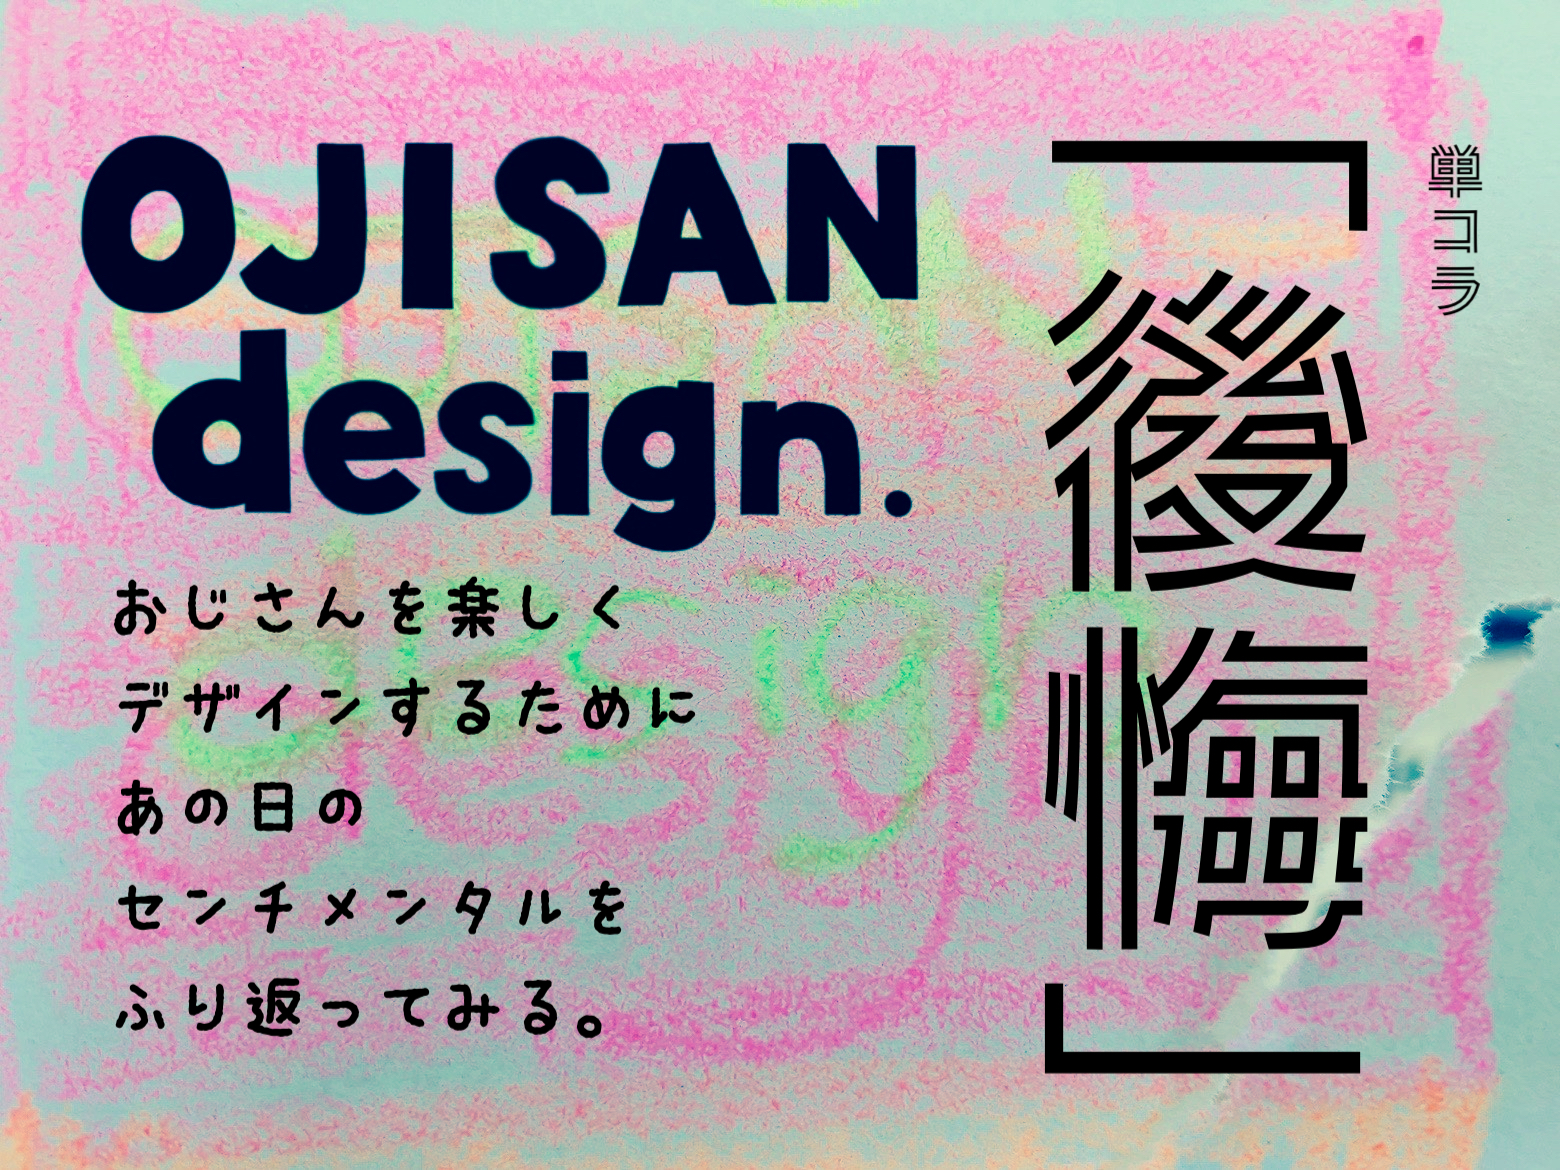 単コラ「OJI SAN design  後悔」おじさんを楽しくデザインするために、あの日のセンチメンタルをふり返ってみる。